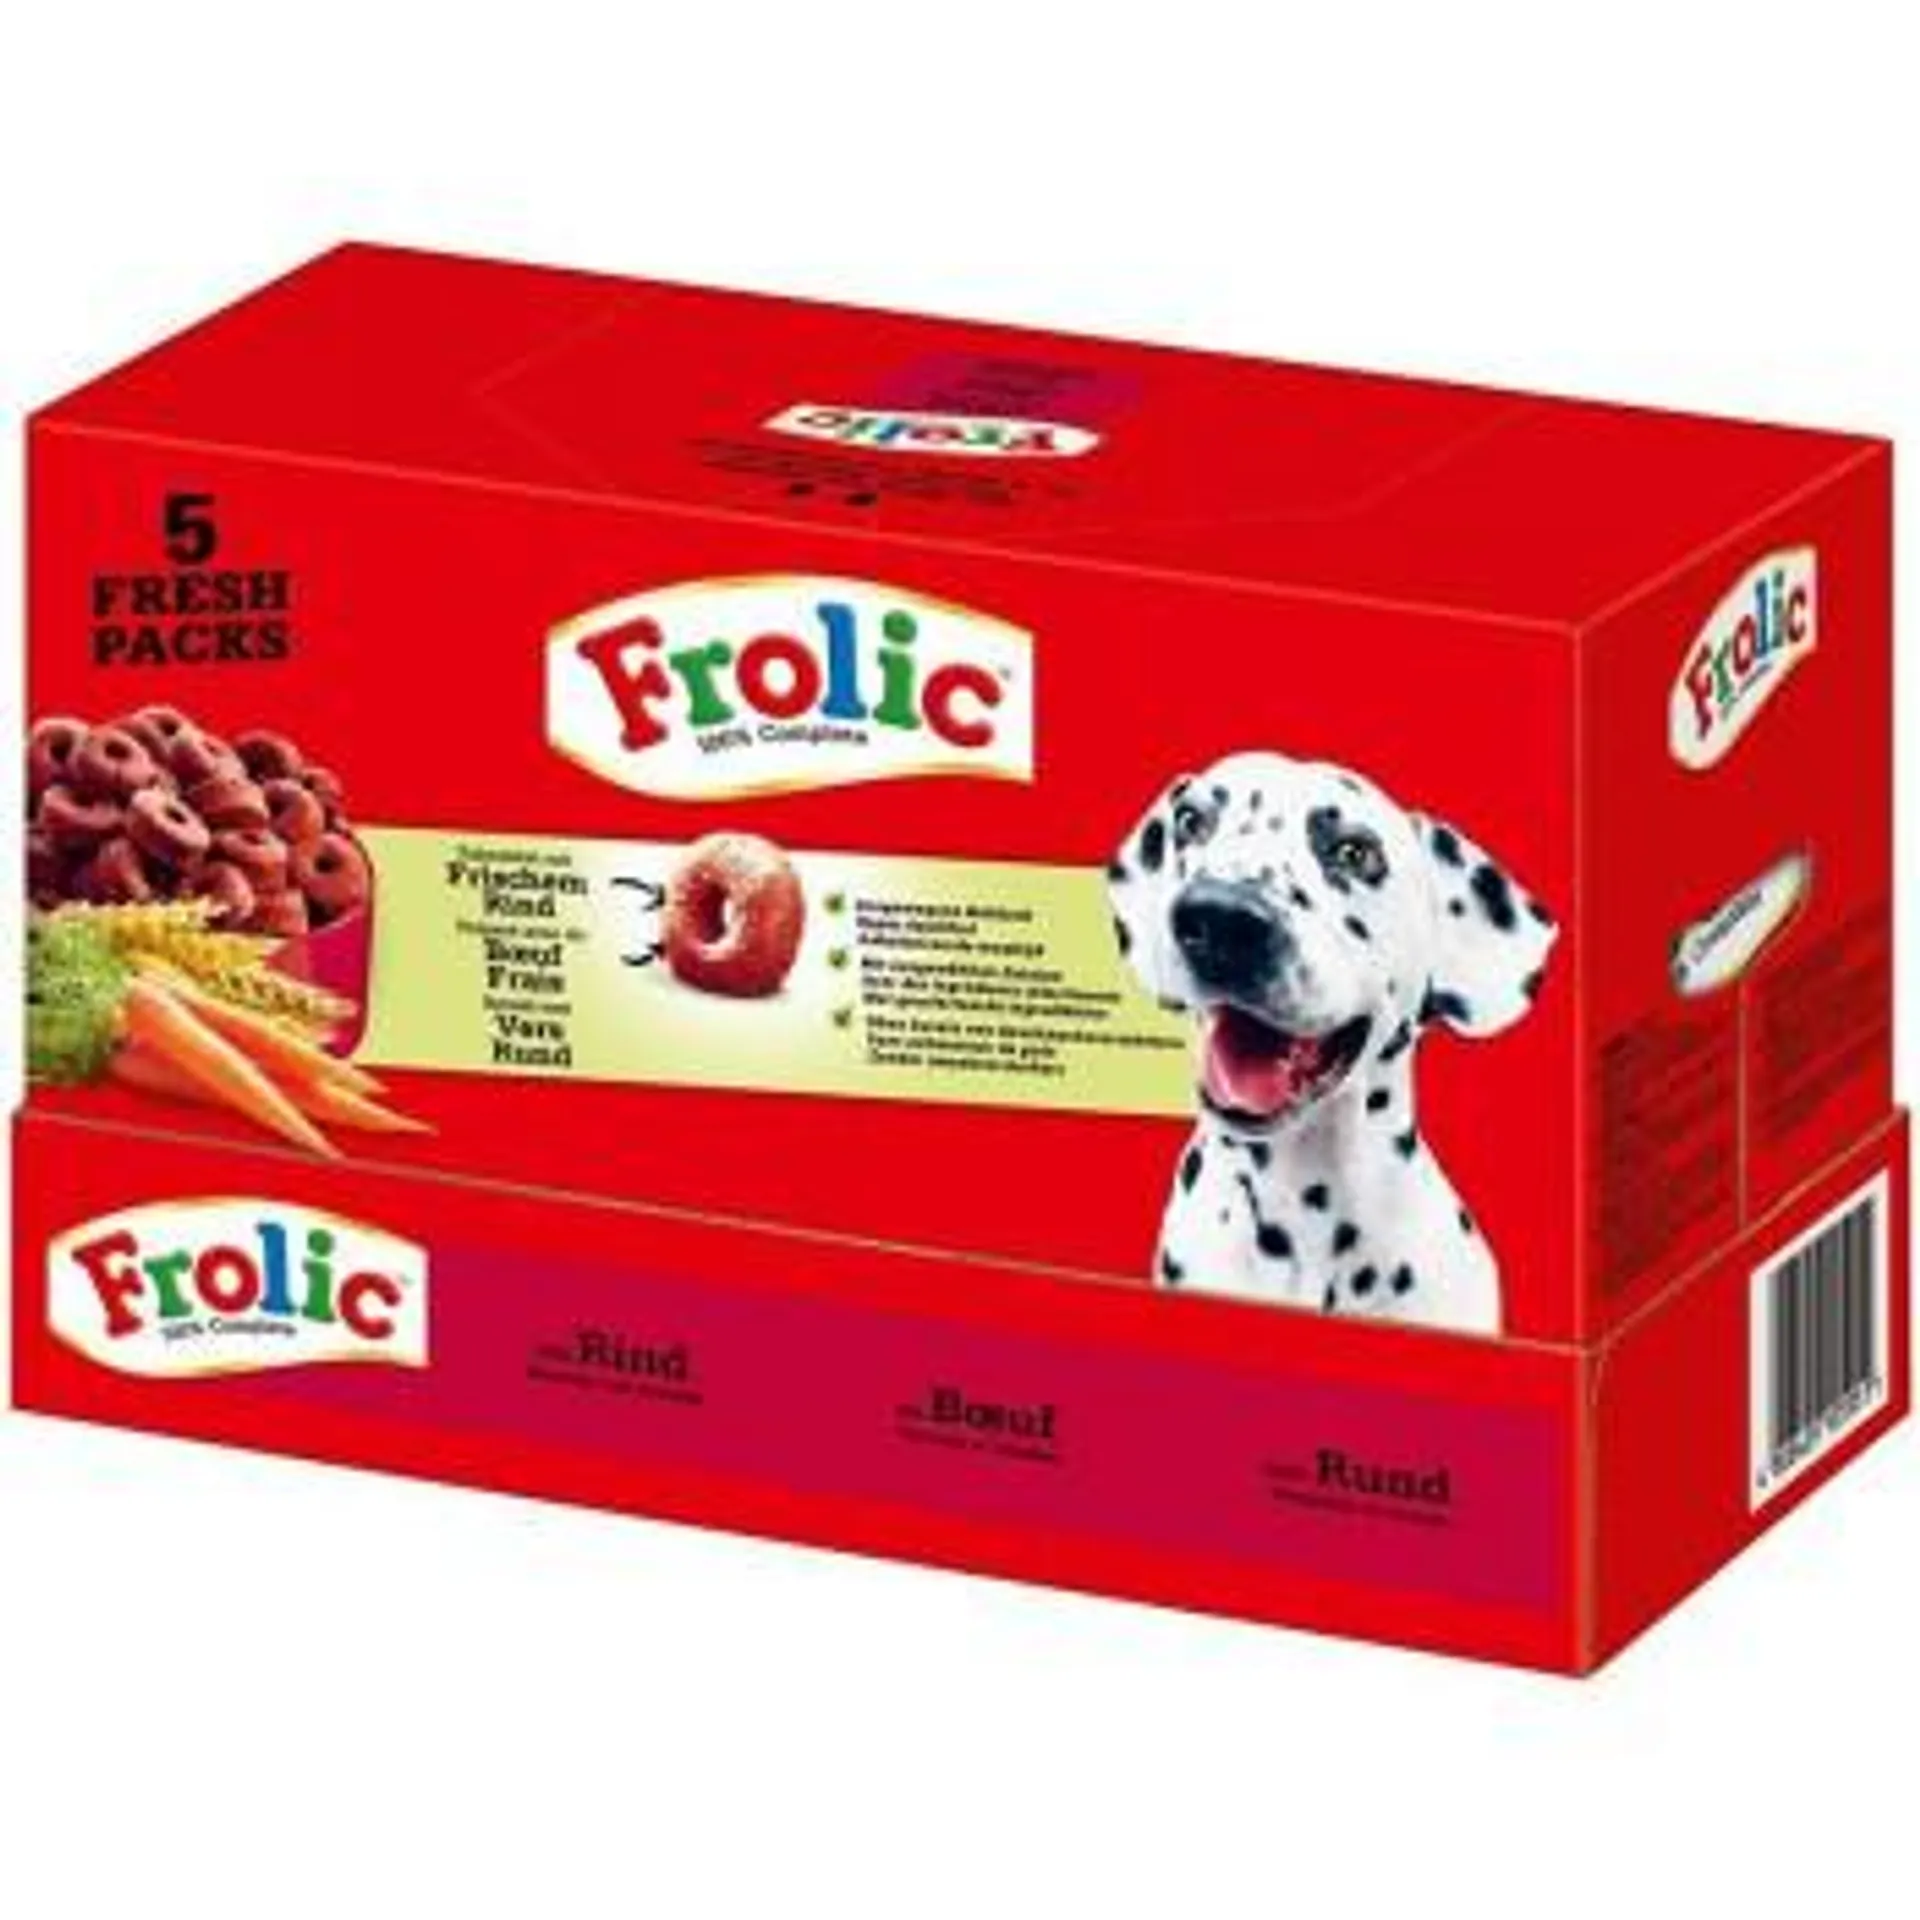 Frolic 5 Fresh Packs mit Rind, Karotten und Getreide 5 x 1,5kg